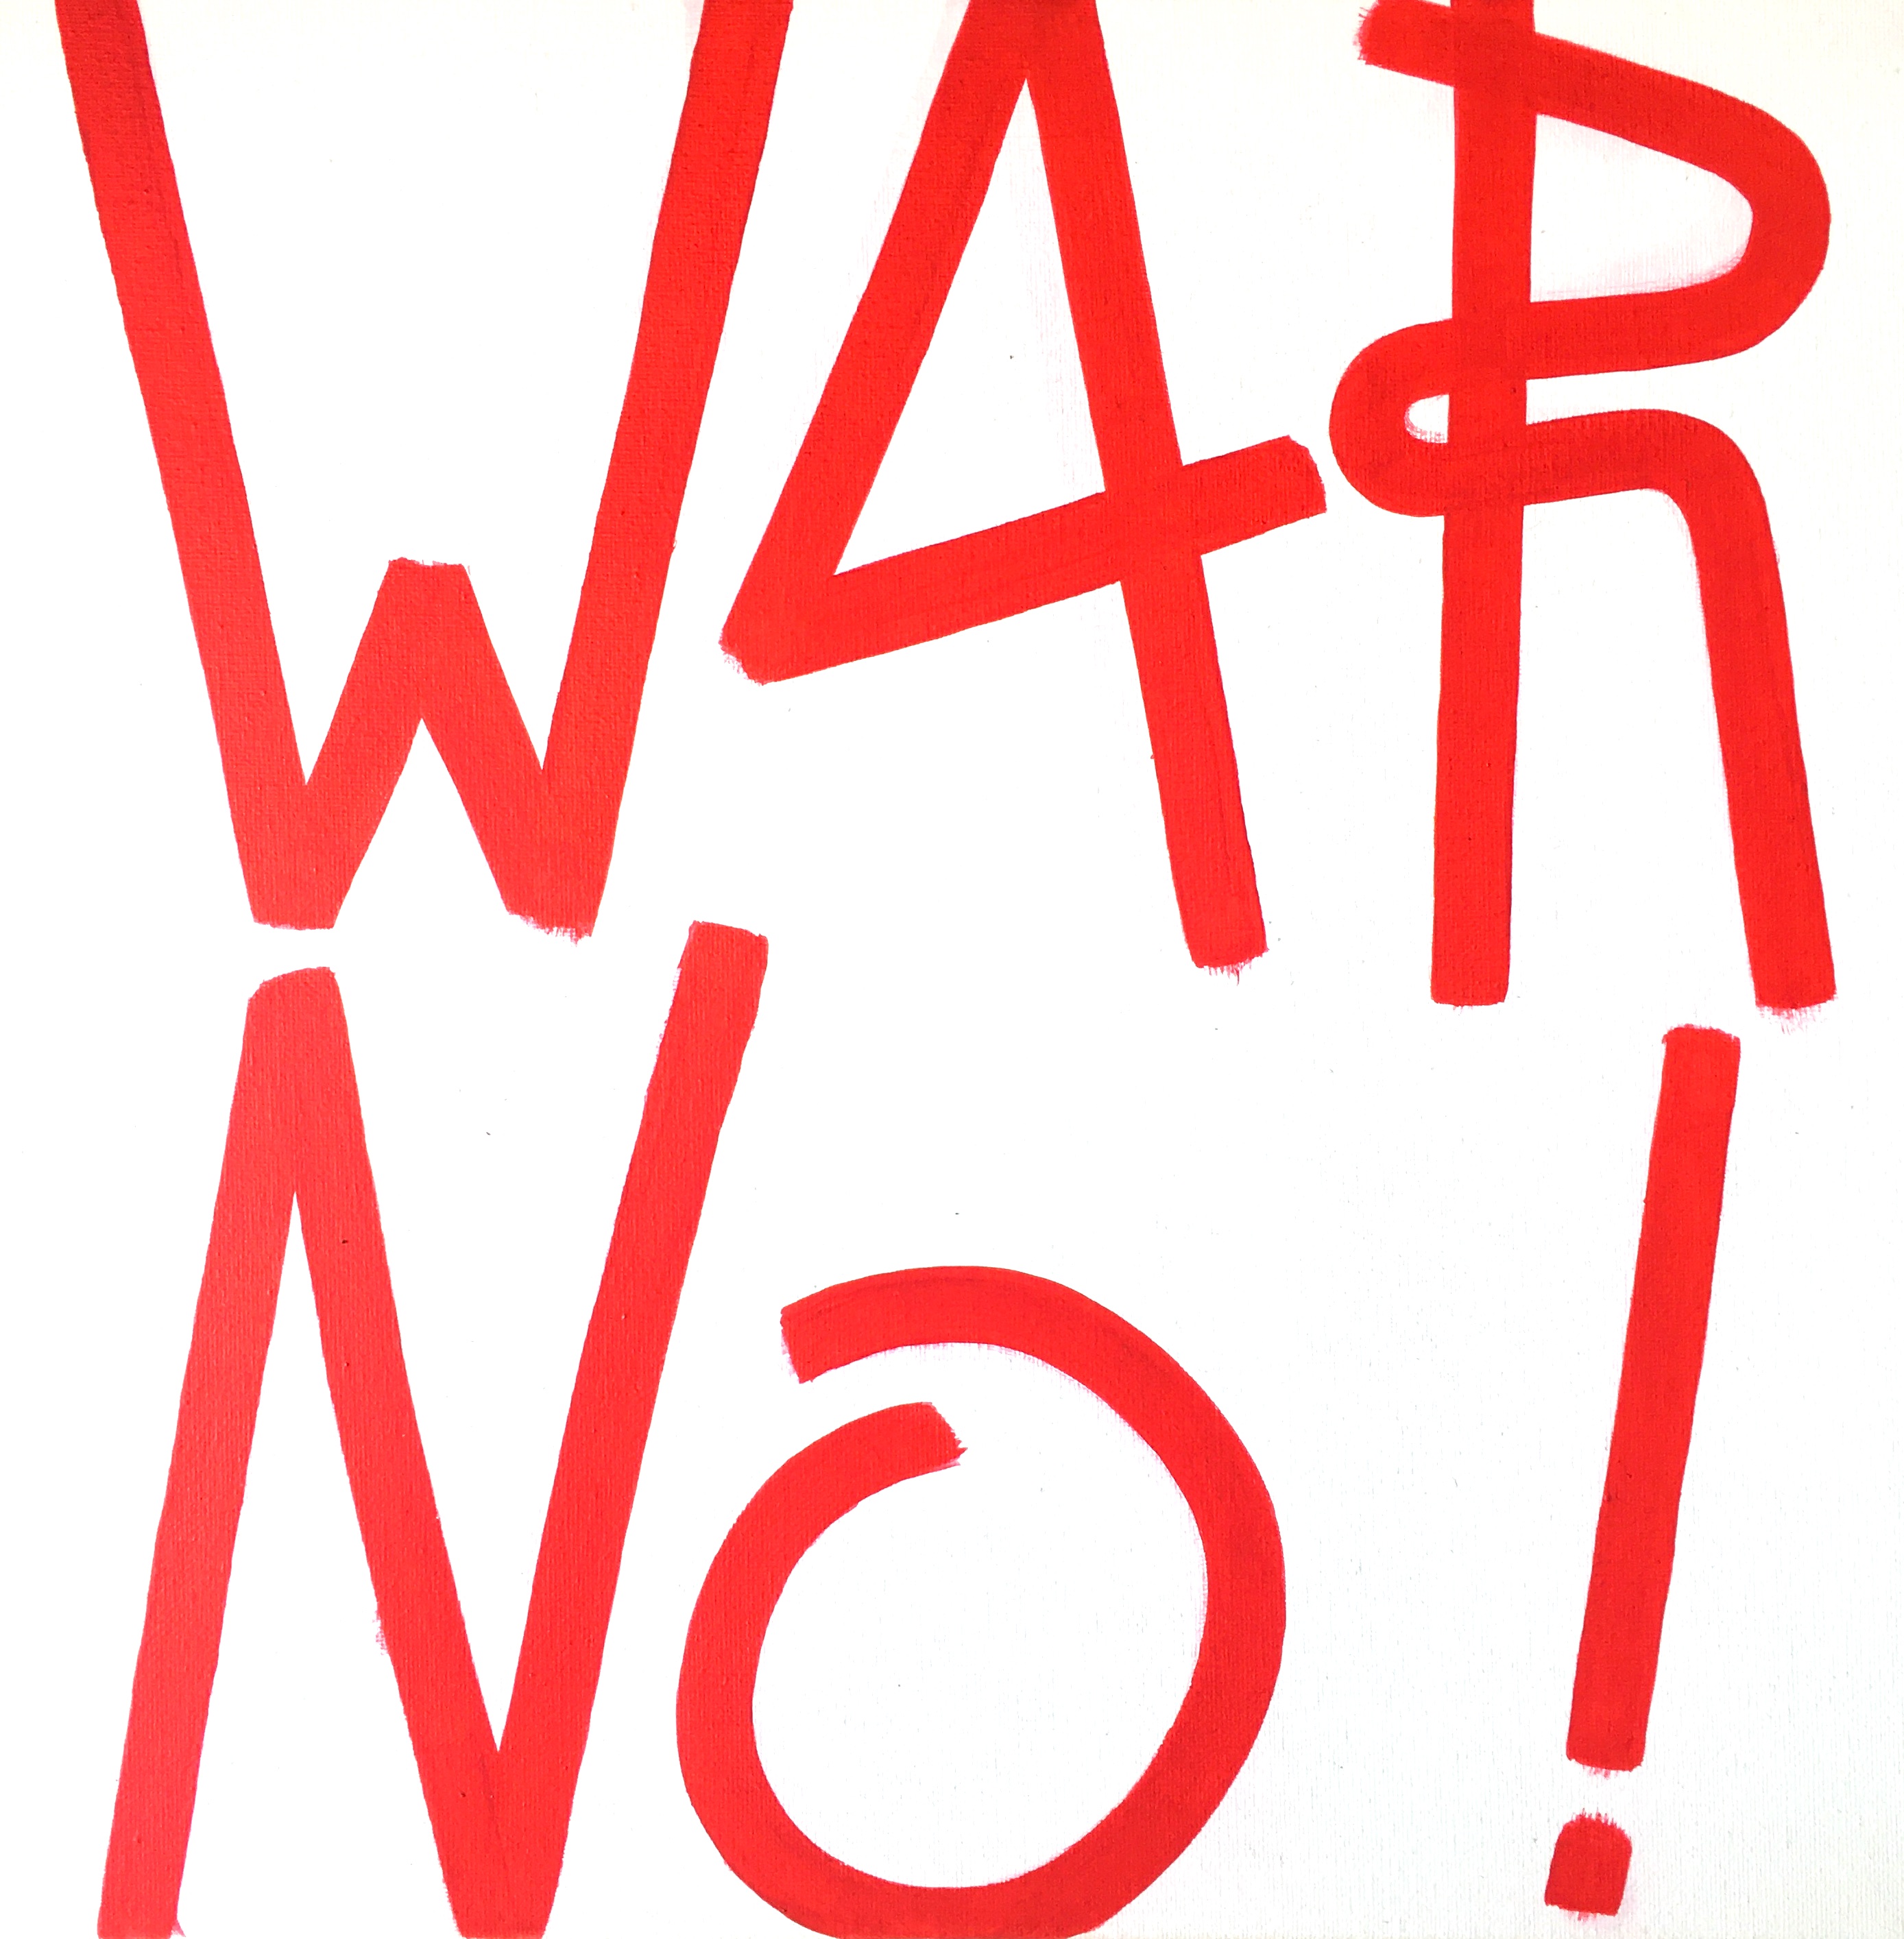 War No!